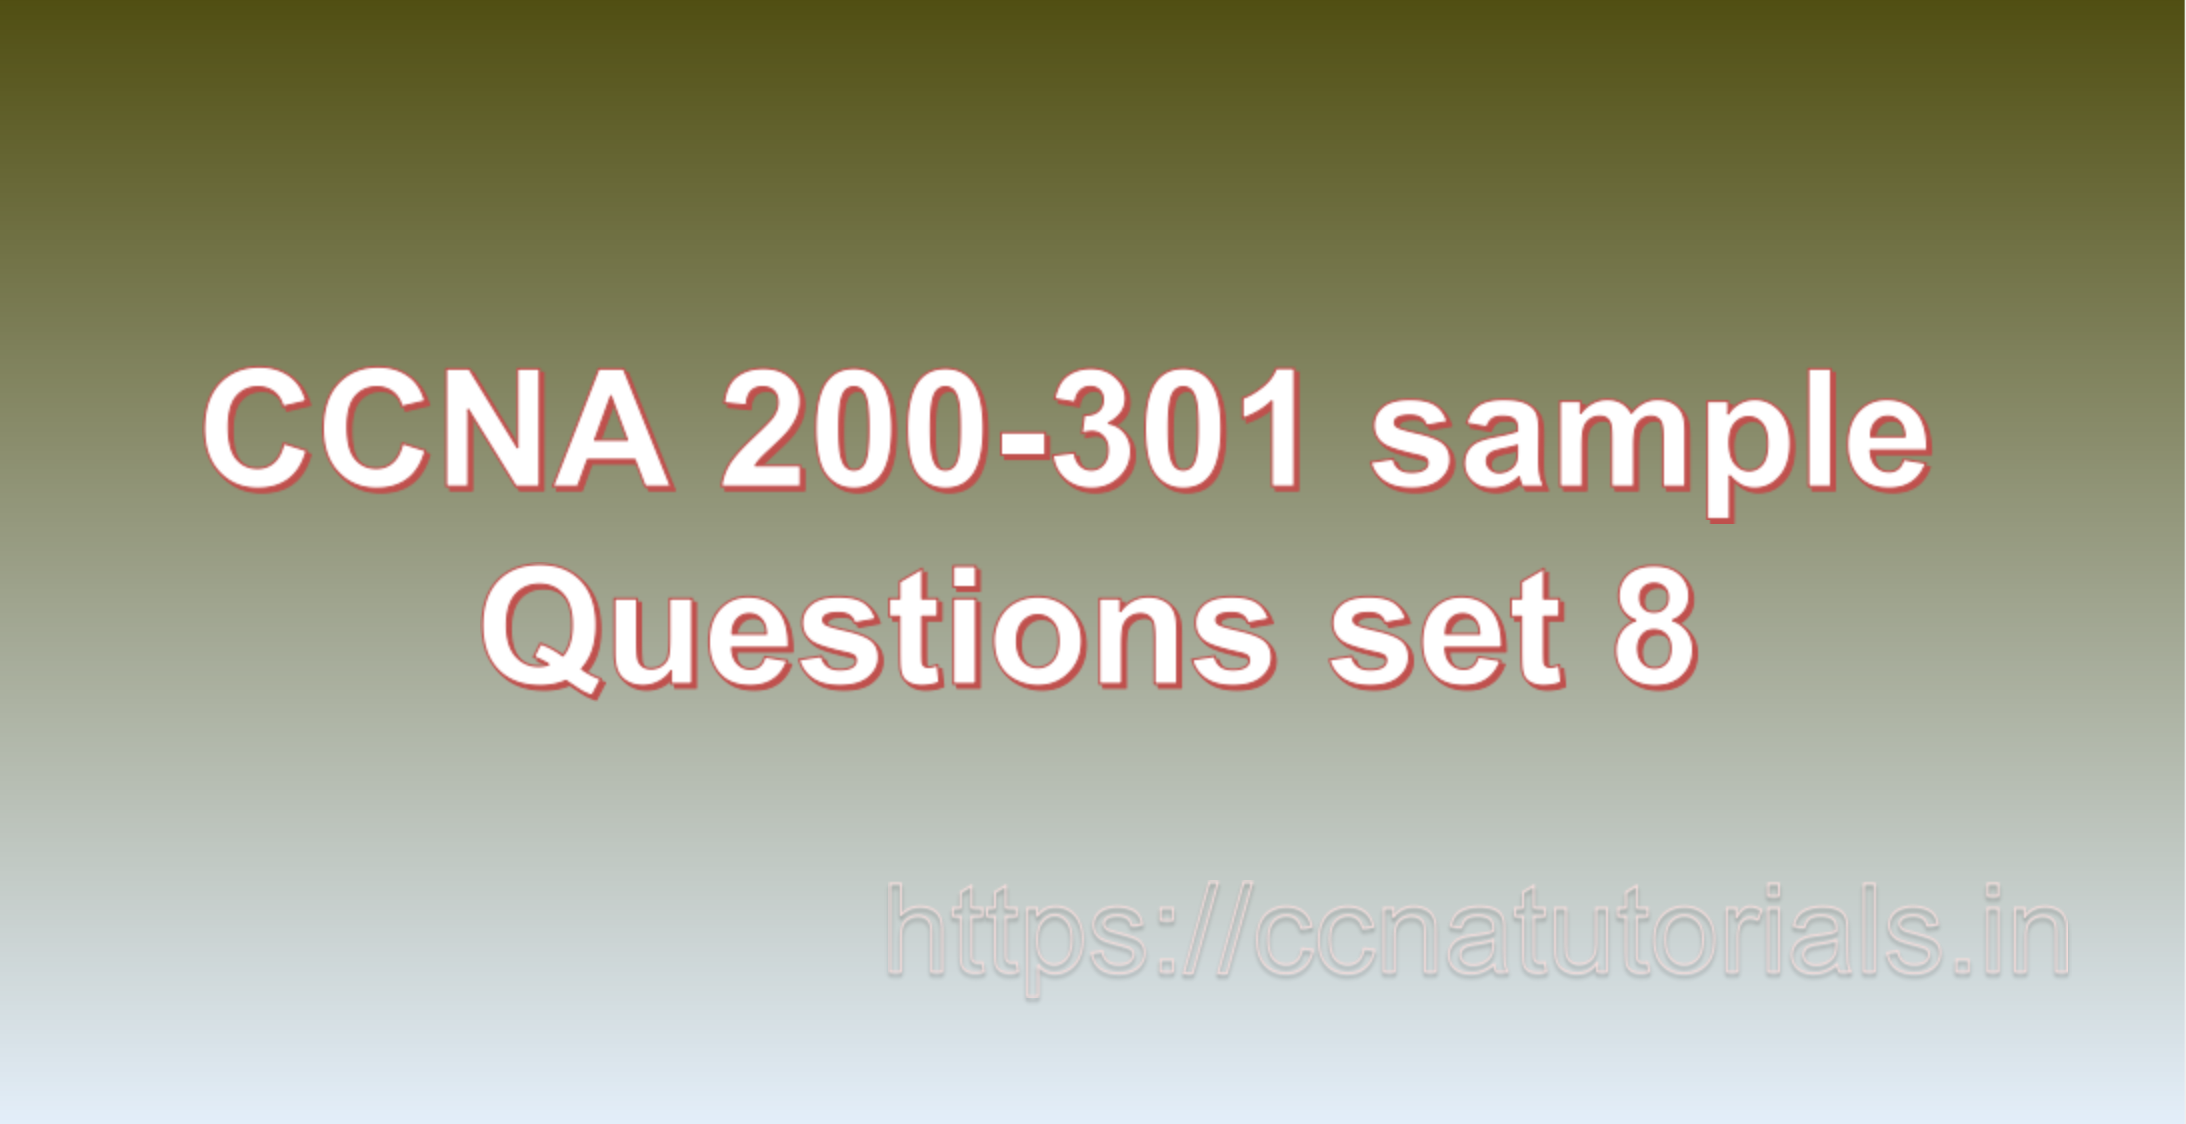 ccna sample questions set 8, ccna tutorials, CCNA Exam, ccna